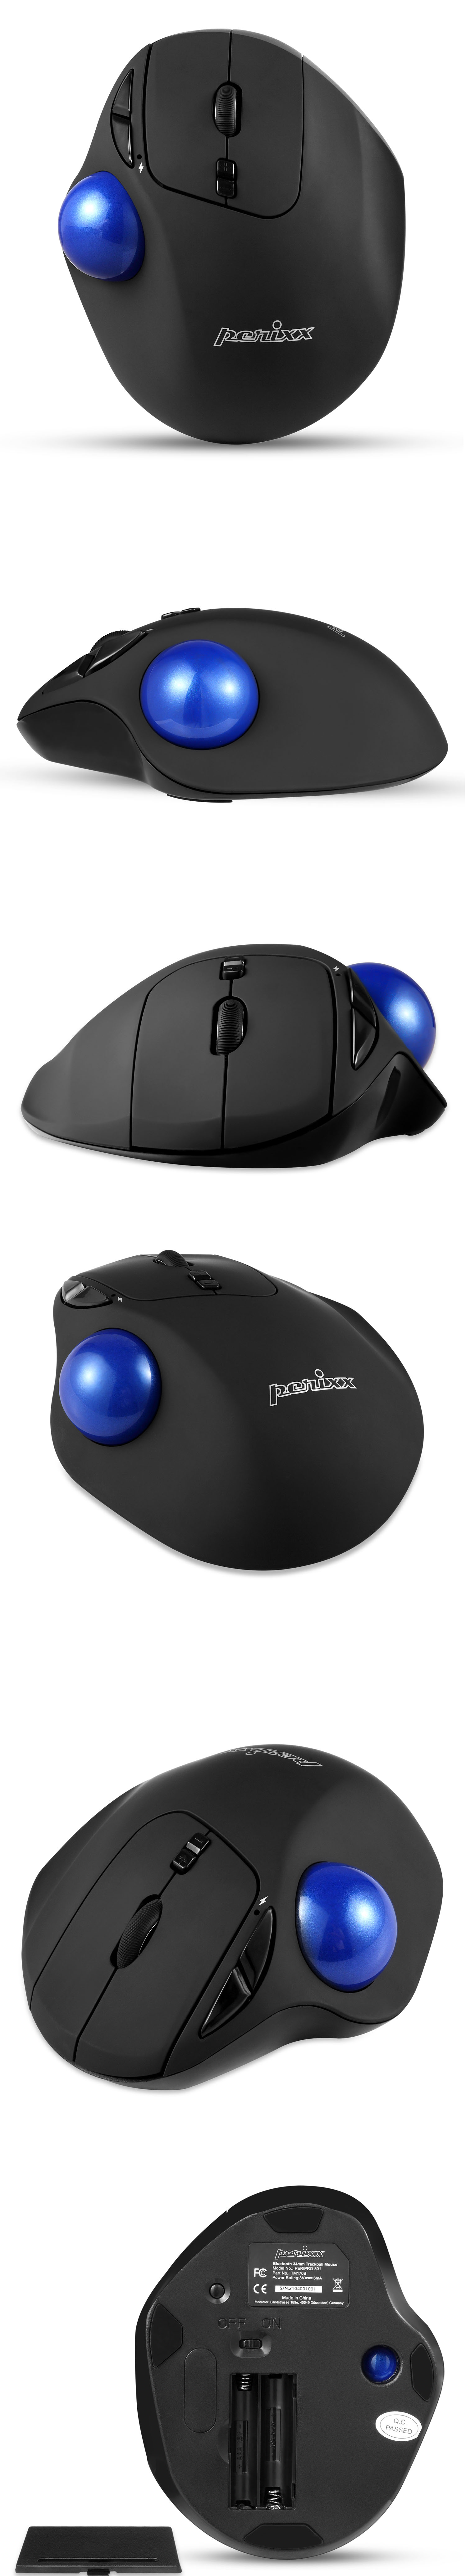 ペリックス トラックボールマウス エルゴノミクス 無線 ワイヤレス 7ボタン USB 接続 おすすめ エルゴ 正規保証品 PERIMICE-717